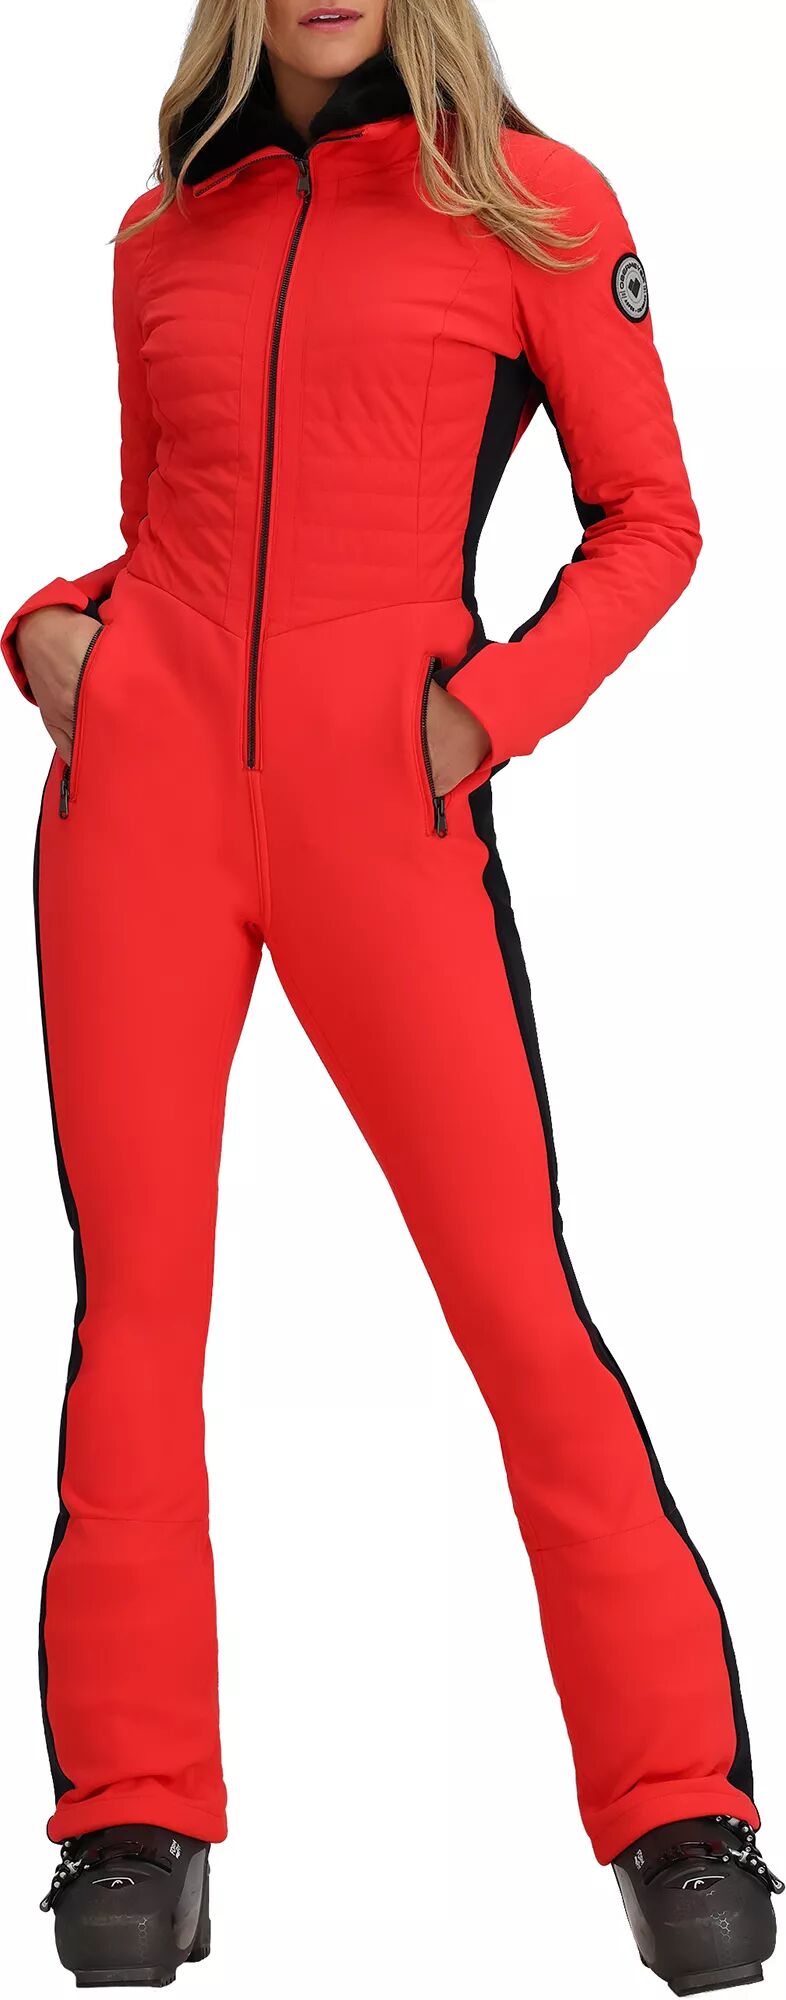 Photos - Ski Wear Obermeyer Women's Katze Winter Suit, Size 2, Orange 20obewwktzstxxxxxapo